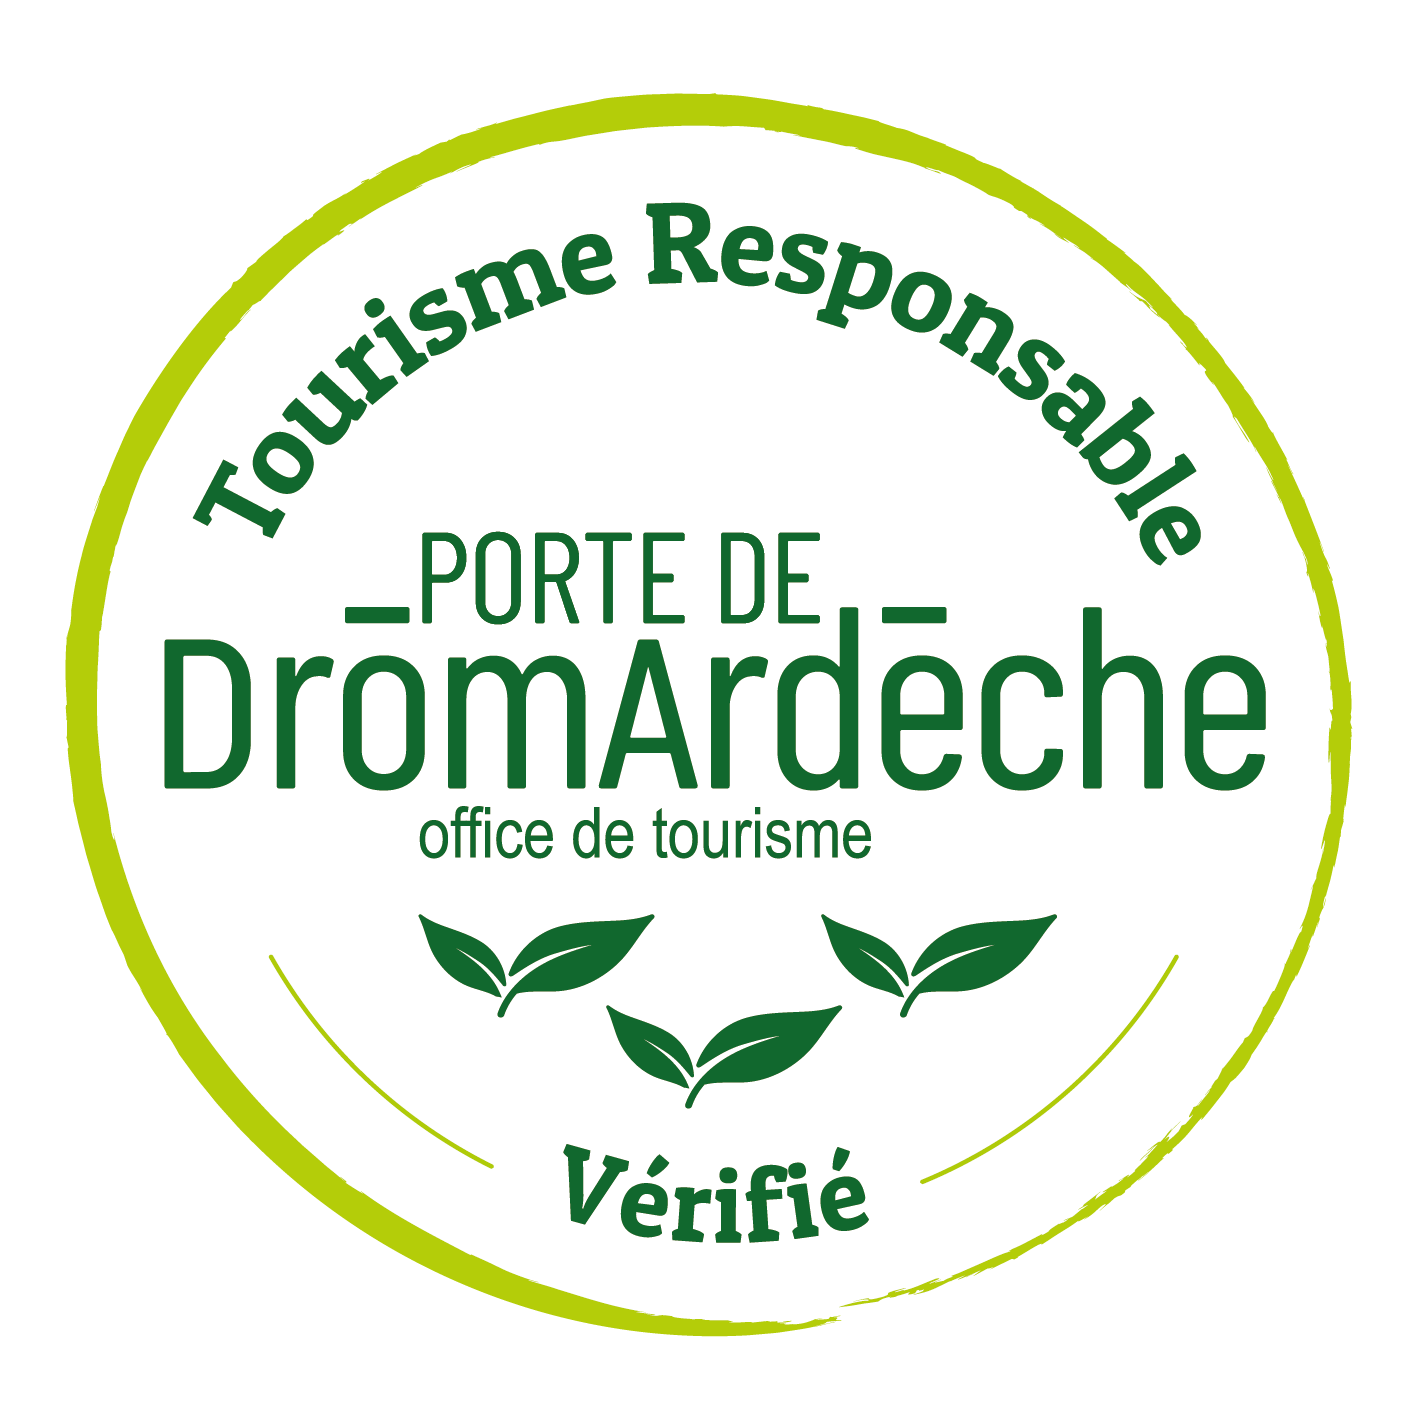 2024-Logo-Label-Tourisme-Responsable-OT-PortedeDromardeche-vérifié-CMJN-VF-3 Feuilles_Plan de travail 1 copie 2